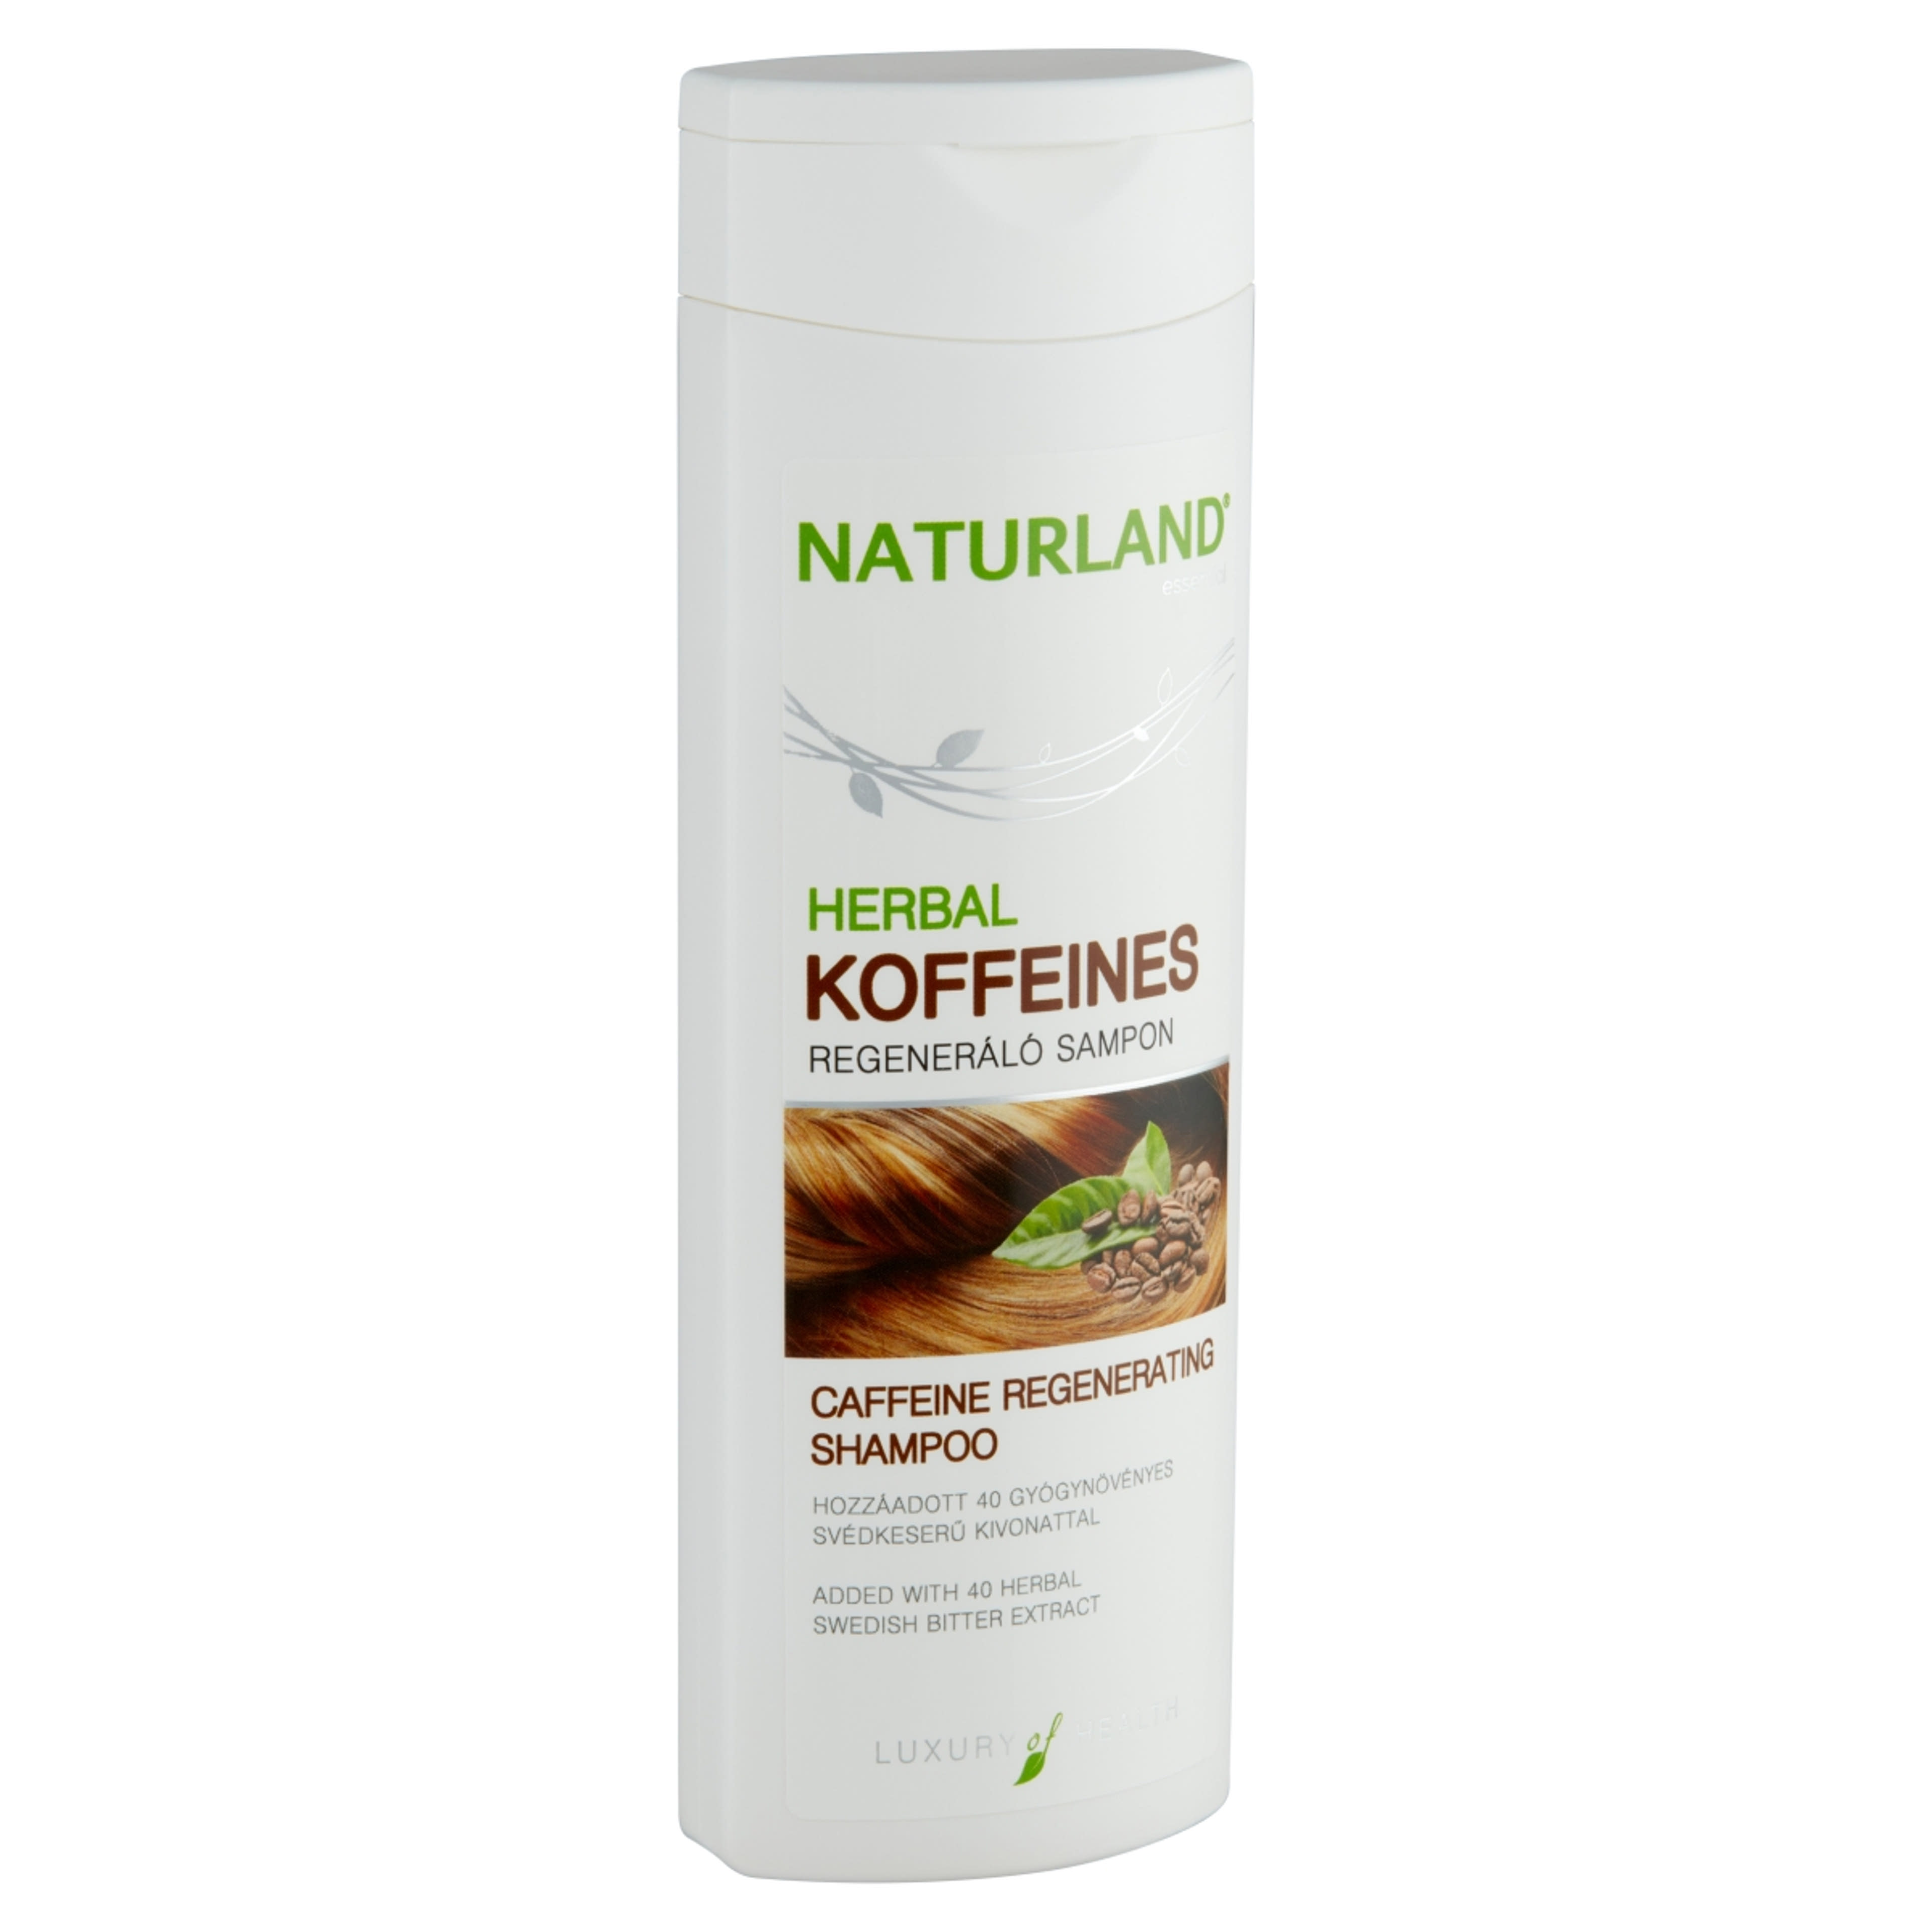 Naturland Herbal koffeines sampon - 200 ml-2